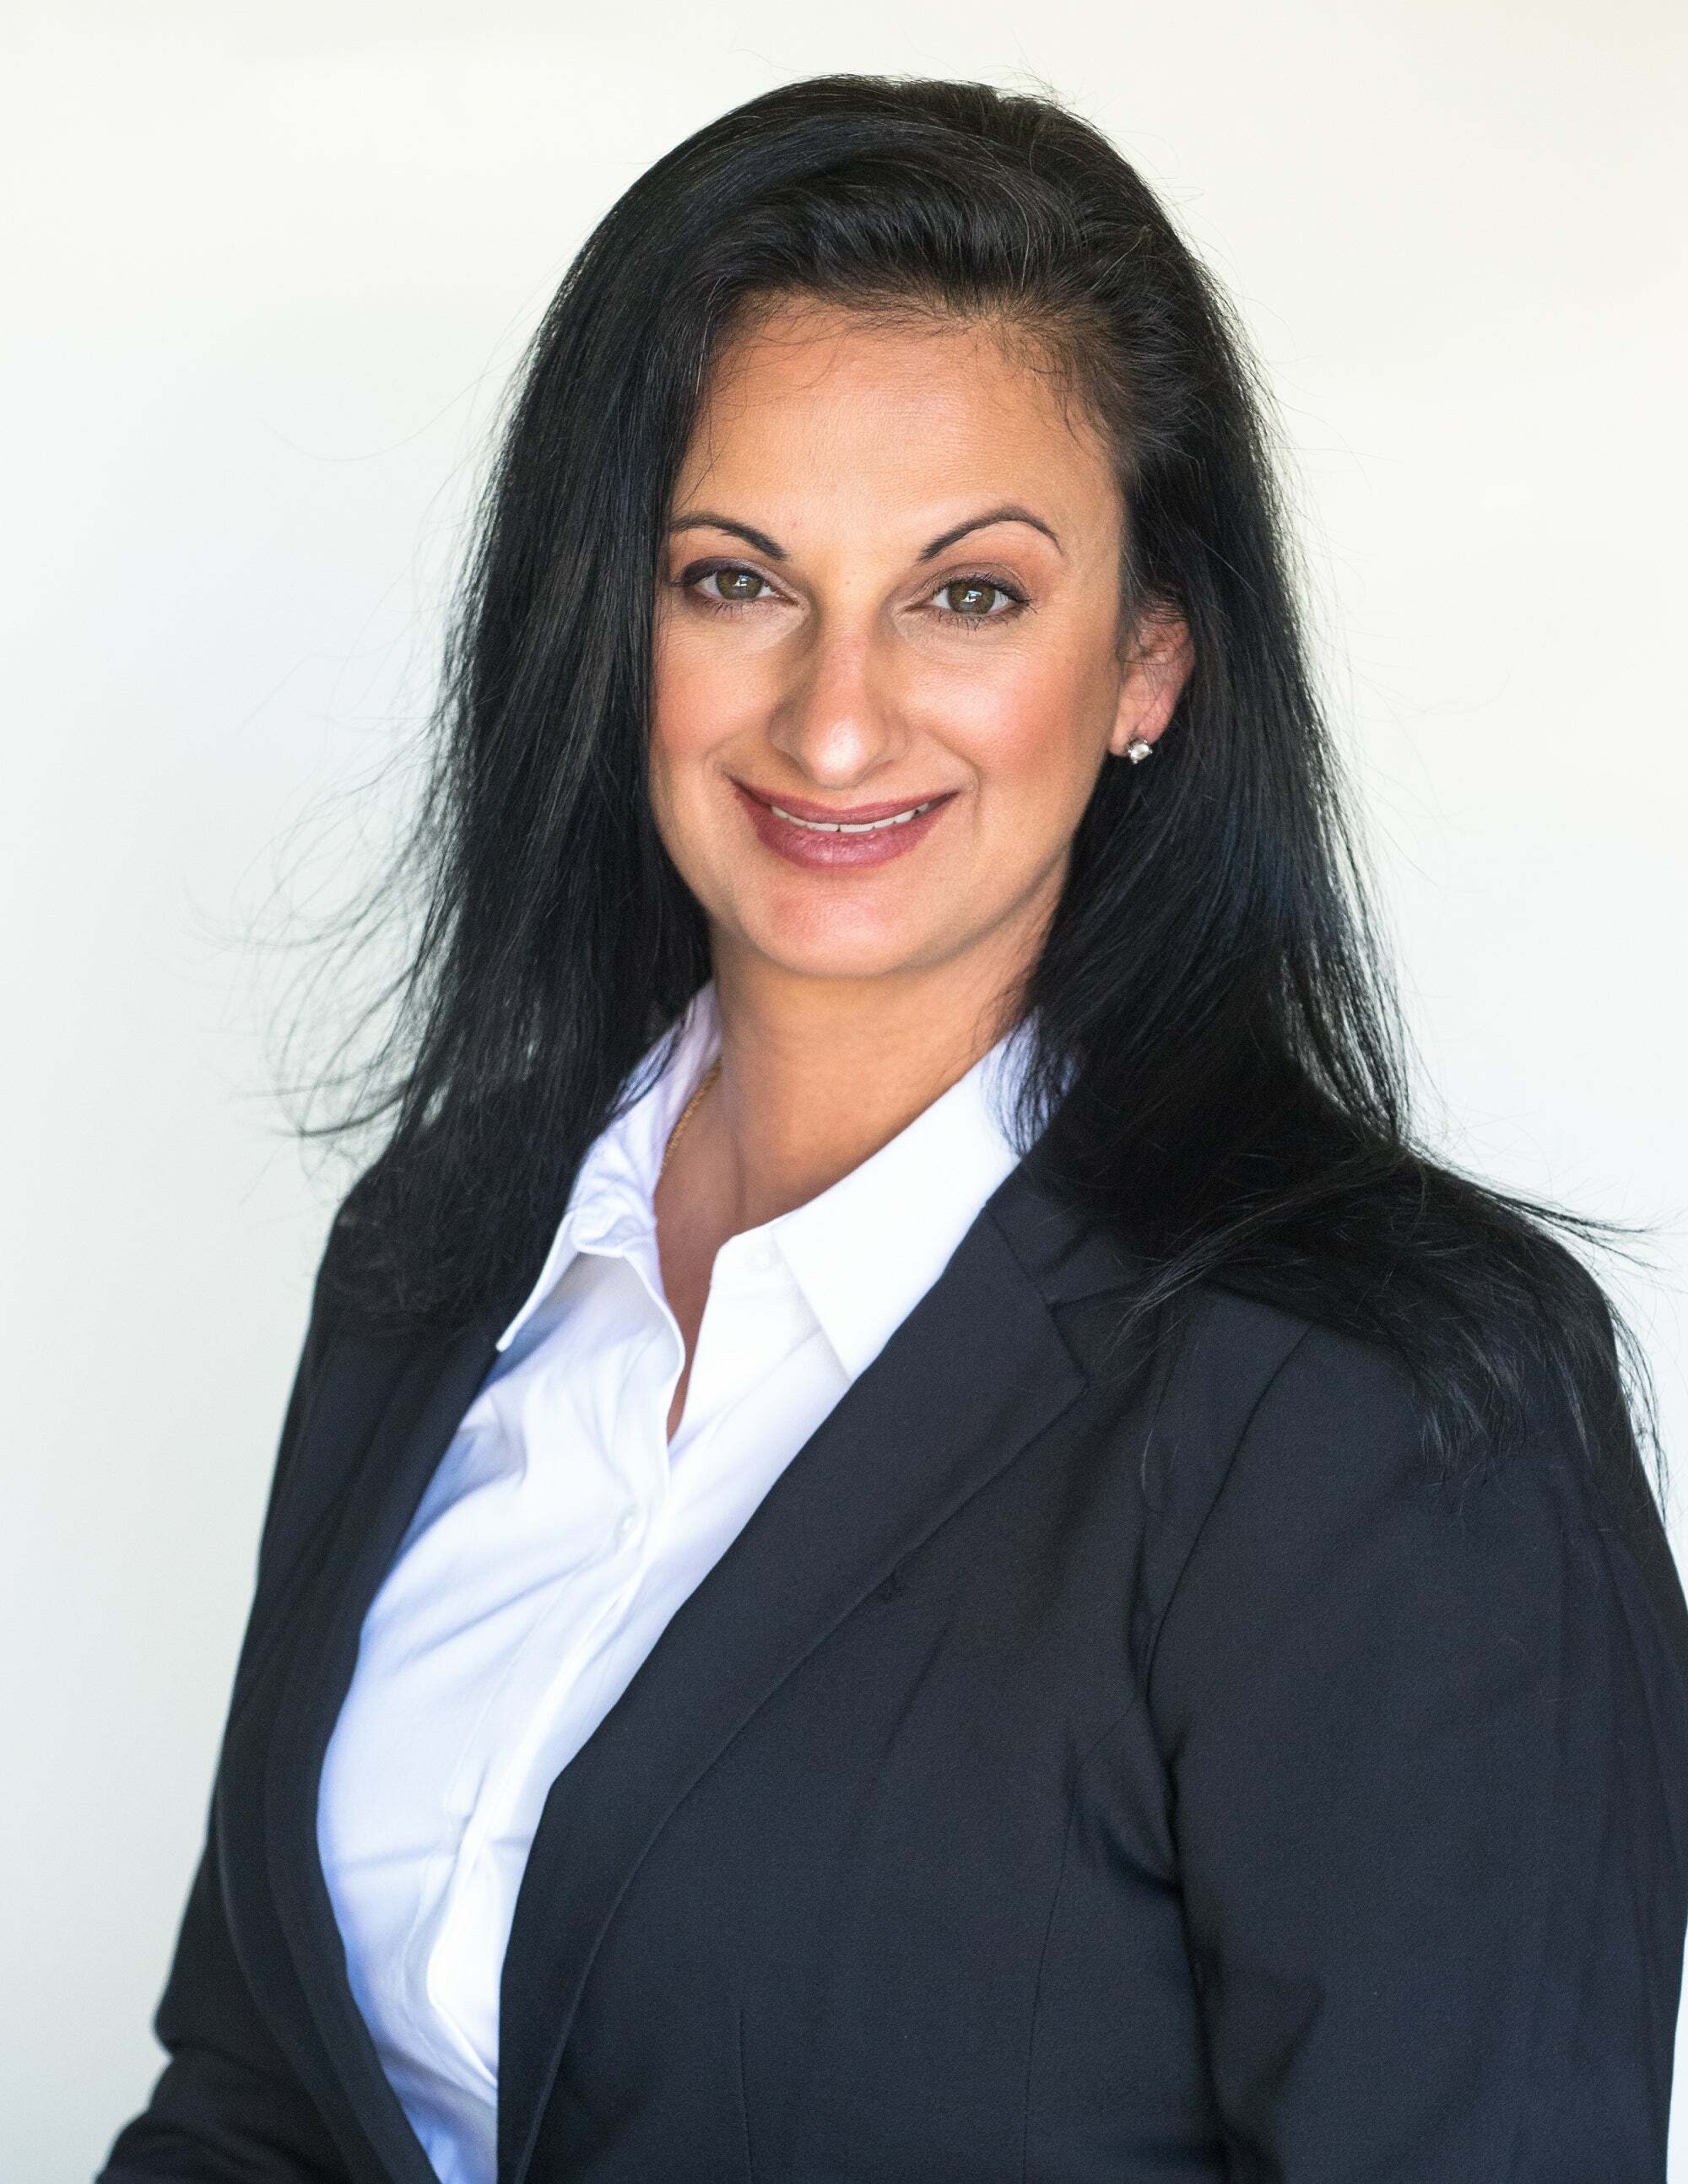 Jacqueline Arrizano, Real Estate Salesperson in Castro Valley, Real Estate Alliance